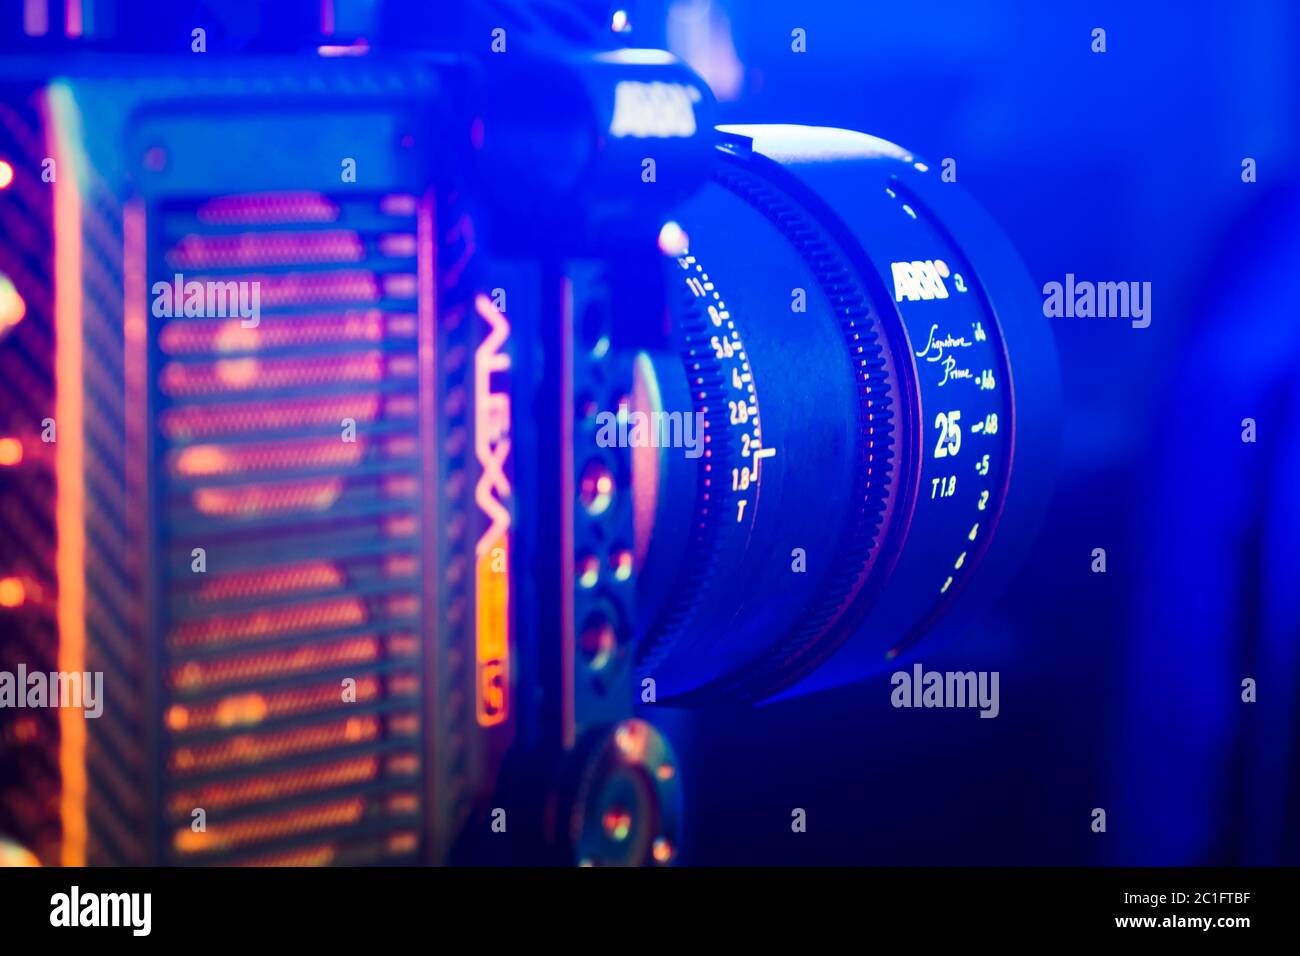 Kyiv, Ucraina - 04.17.2020: Studio di ripresa professionale di video camera Arri Alexa mini LF con obiettivo, primo piano. Attrezzature professionali per cinematografia Foto Stock